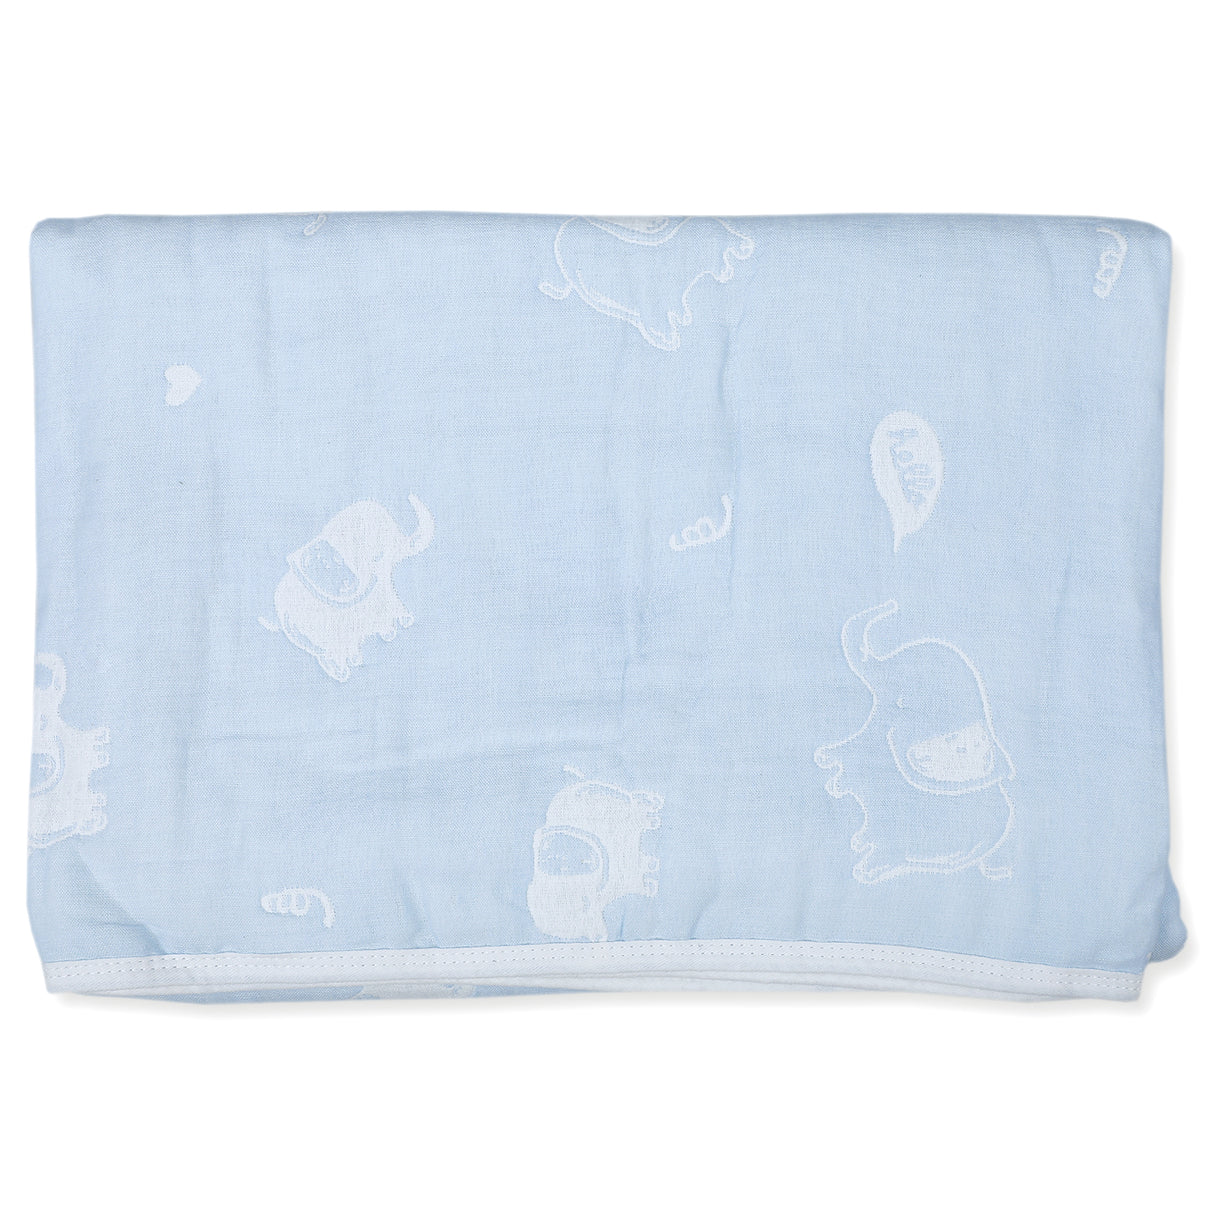 6 Layer Soft Muslin Cotton Blanket